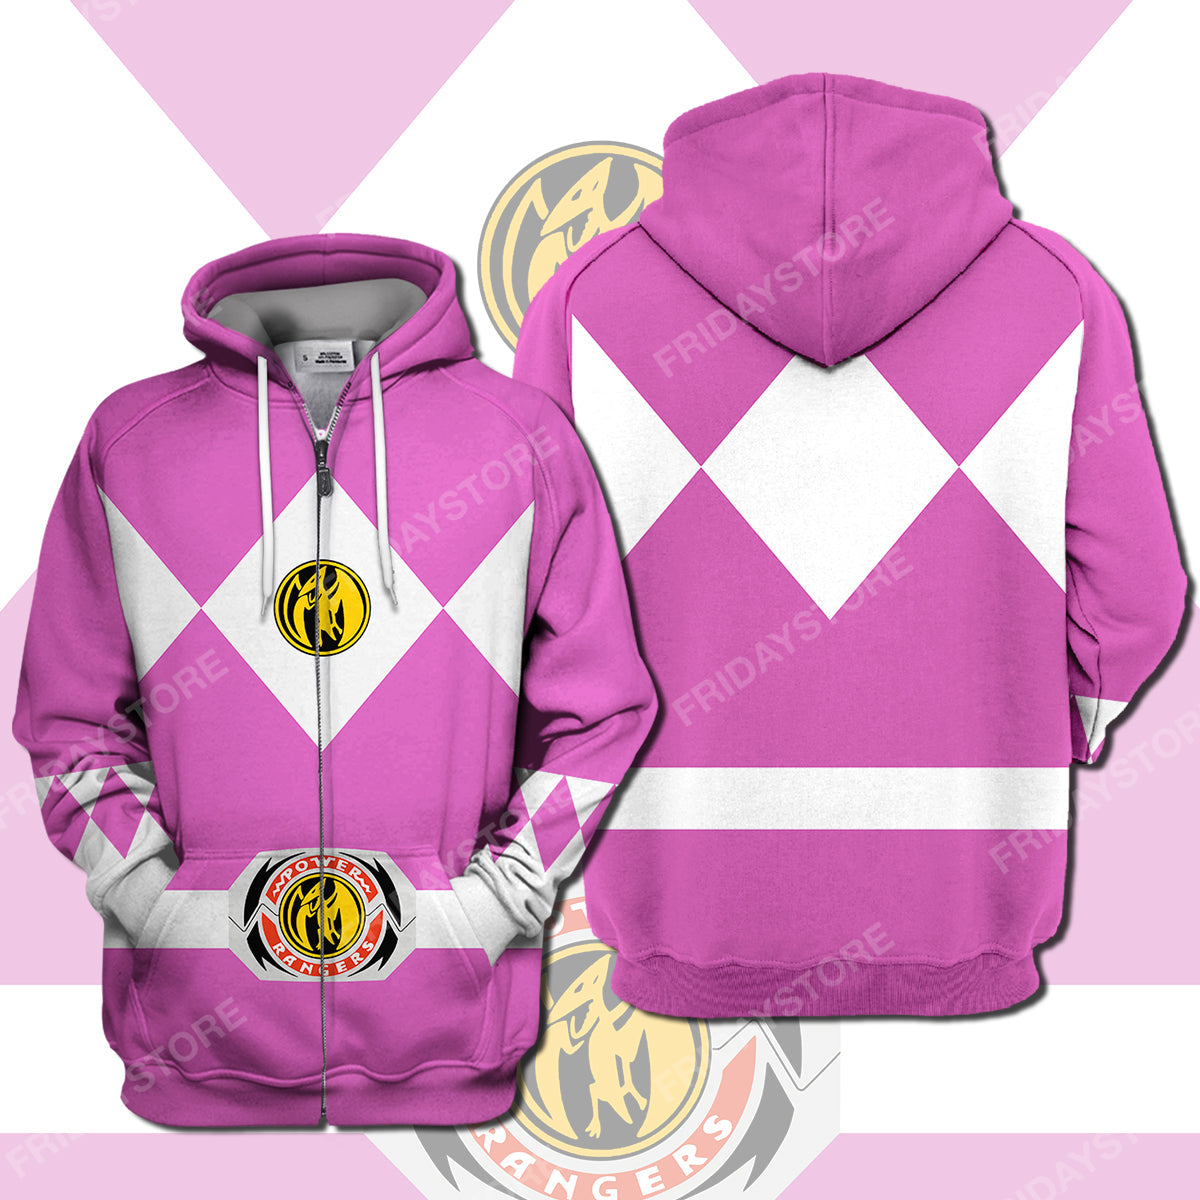 Unifinz Power Ranger T-shirt Pink Power Ranger Costume T-shirt Awesome Power Ranger Hoodie Sweater Tank 2026